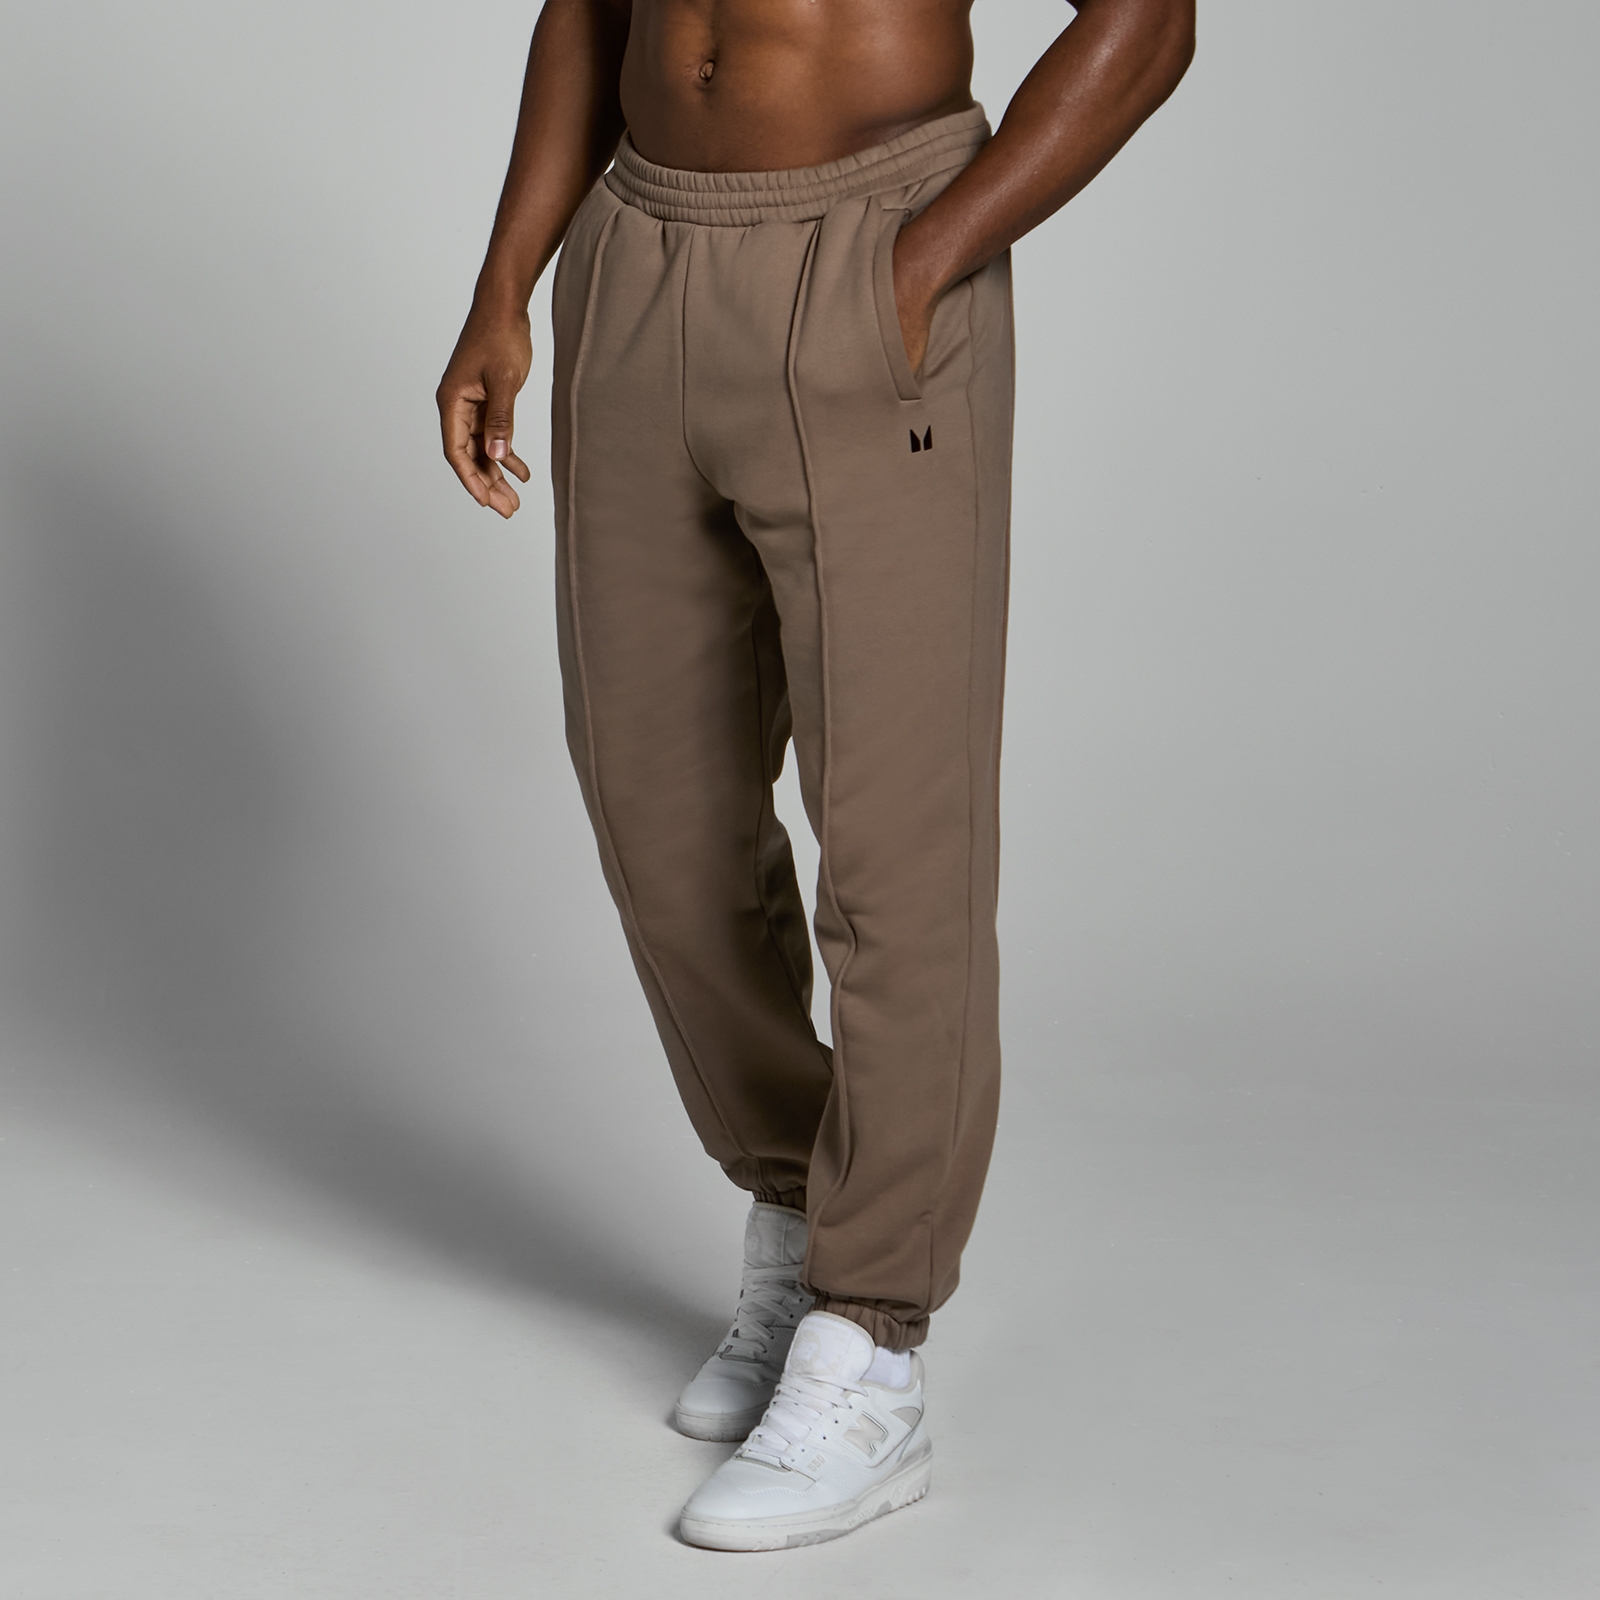 Image of Pantaloni da jogging pesanti oversize MP Lifestyle da uomo - Marrone chiaro - M